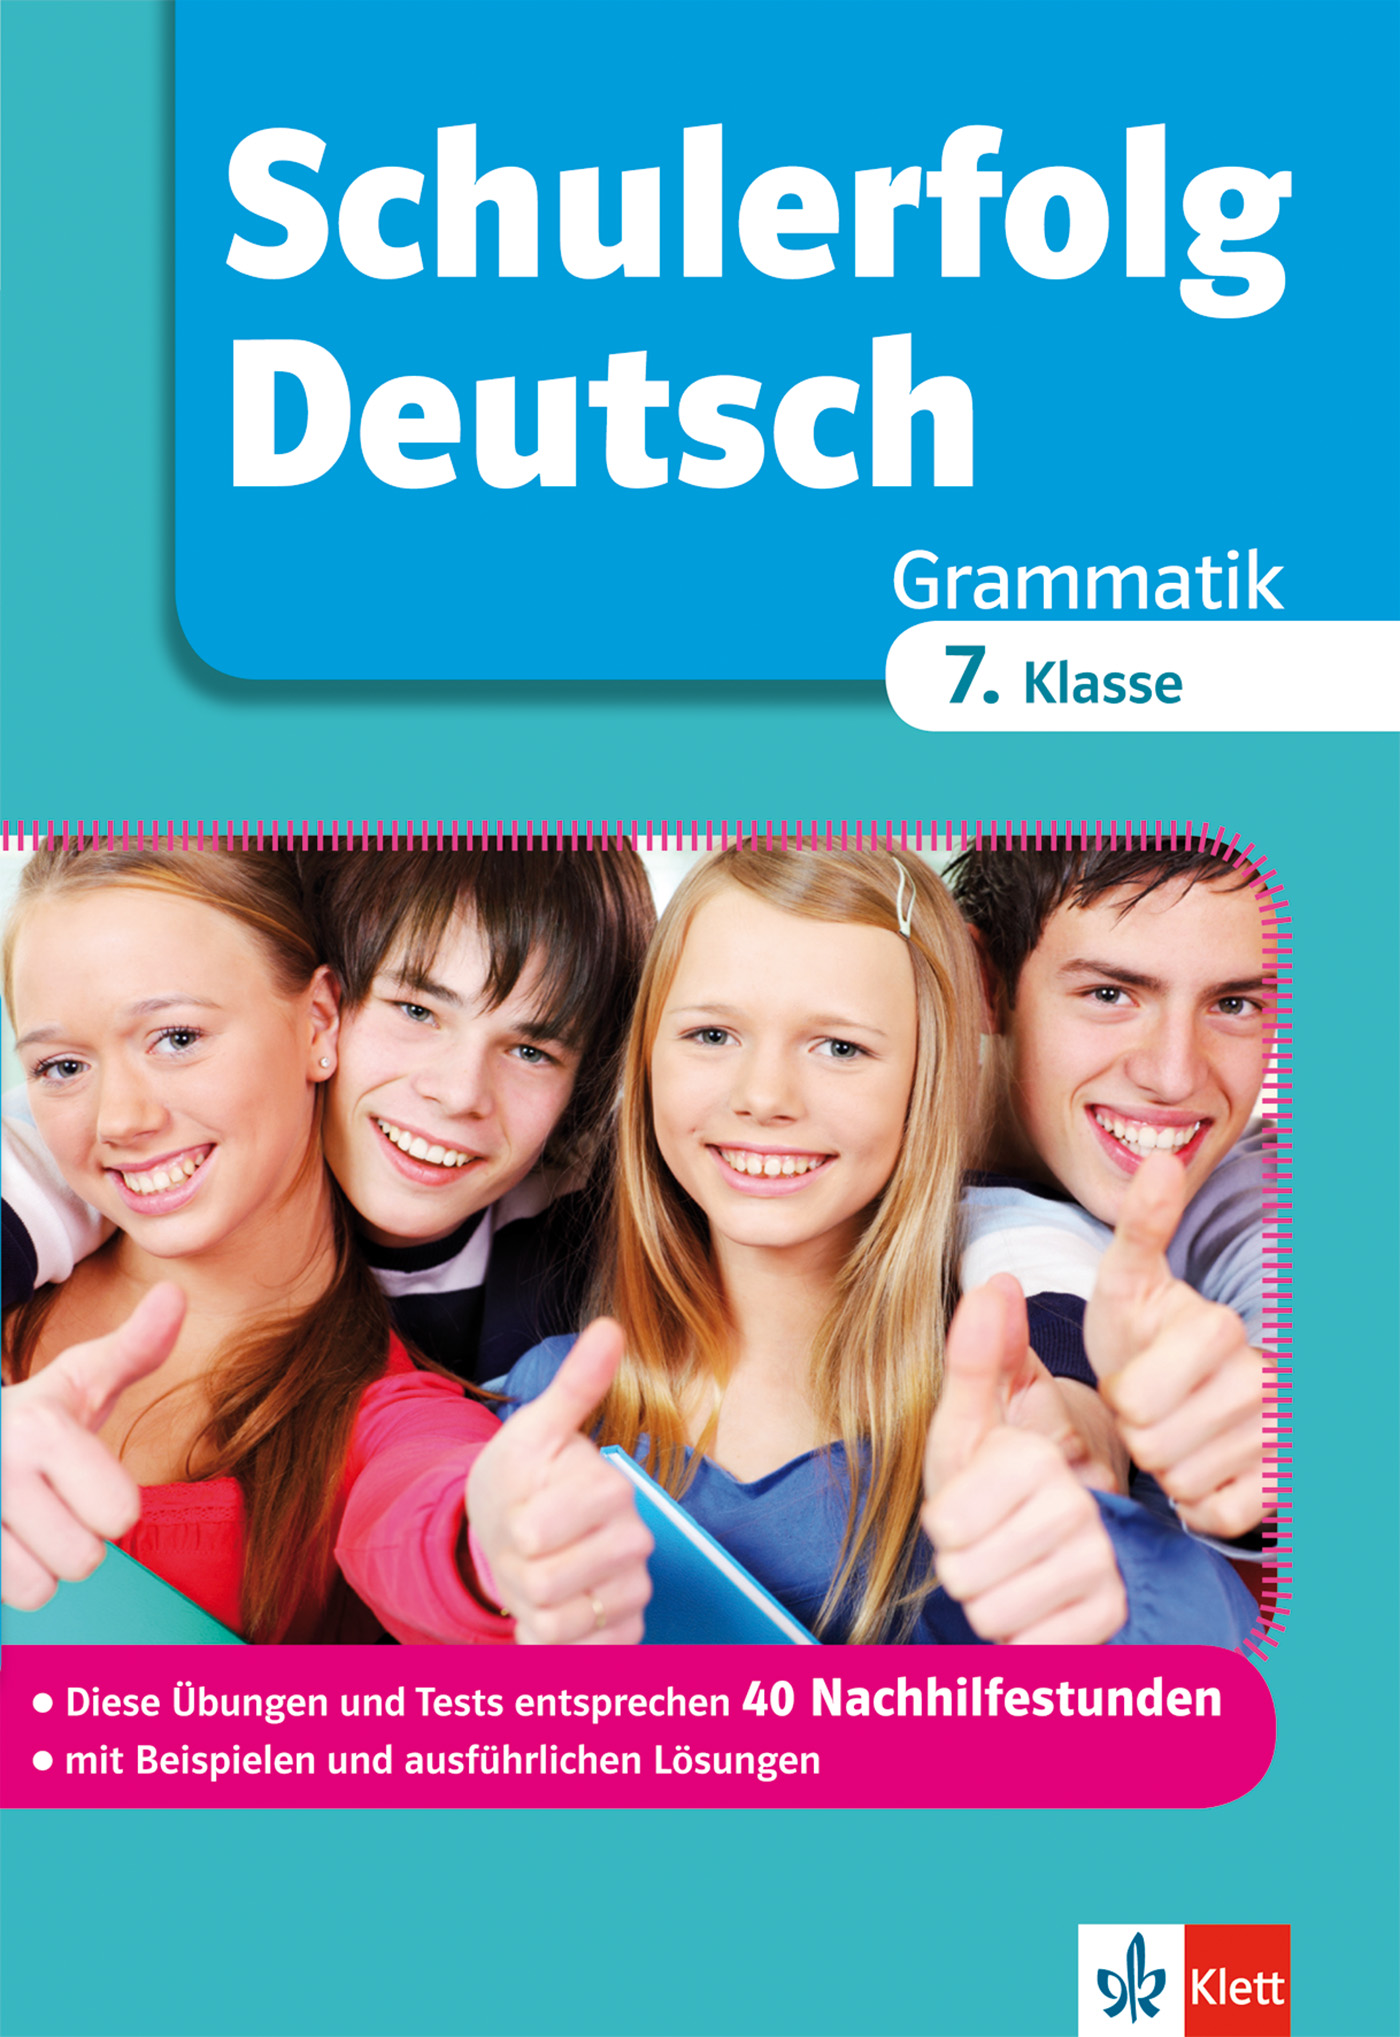 Klett Schulerfolg Deutsch 7. Klasse